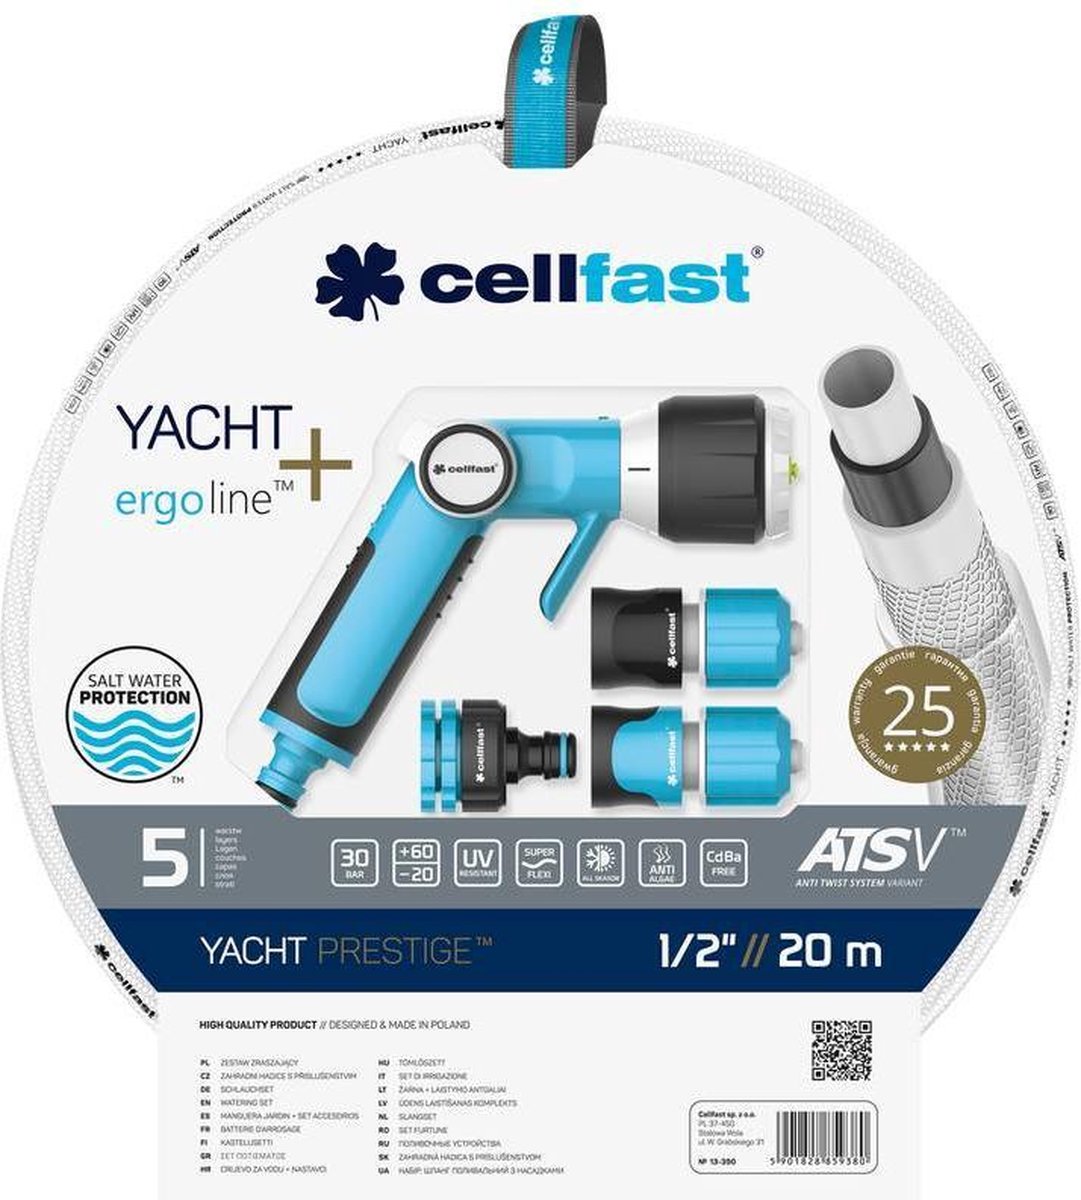 Cellfast Slangenset Yacht Prestige 1/2 20m